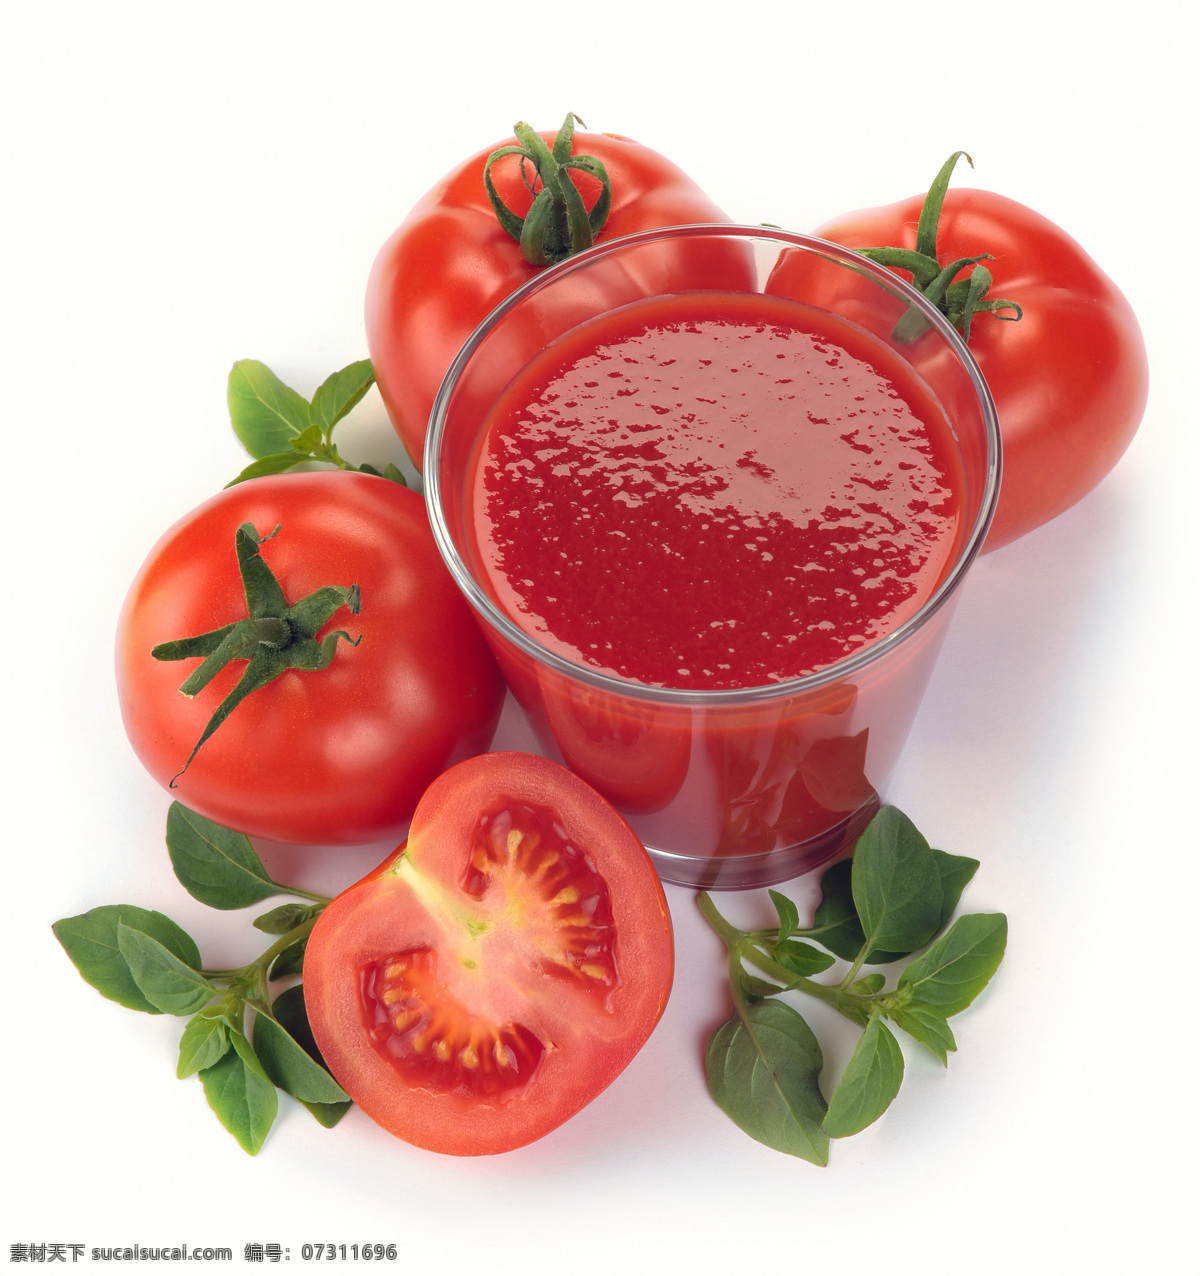 一杯 番茄汁 番茄 可口的西红柿 西红柿 小西红柿 小番茄 蔬菜 健康蔬菜 蔬菜图片 餐饮美食